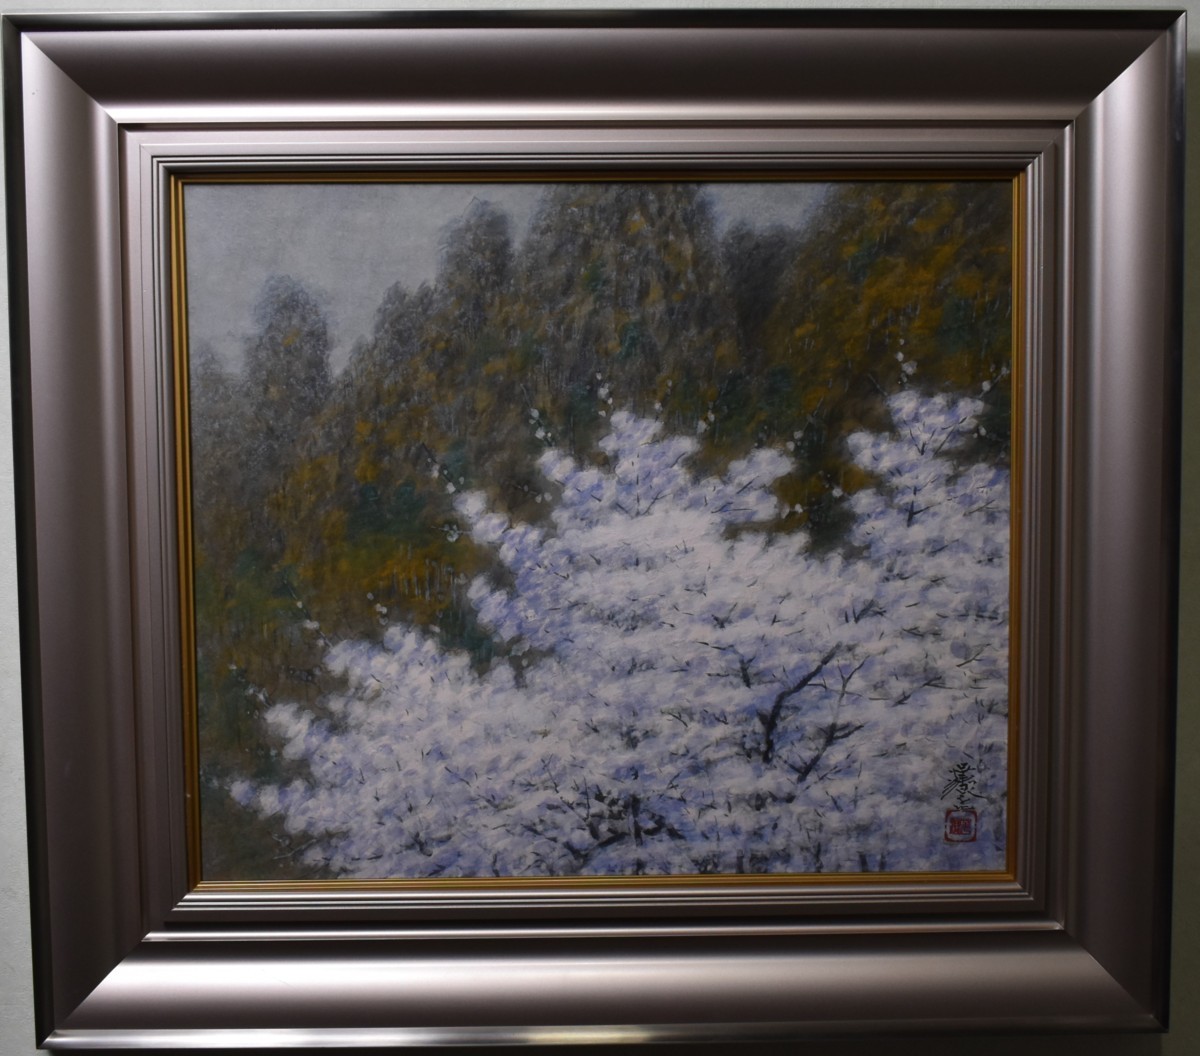 人气推荐作品！安西花京的日本画, 第10号 妙义春景, 绘画, 日本画, 景观, 风与月